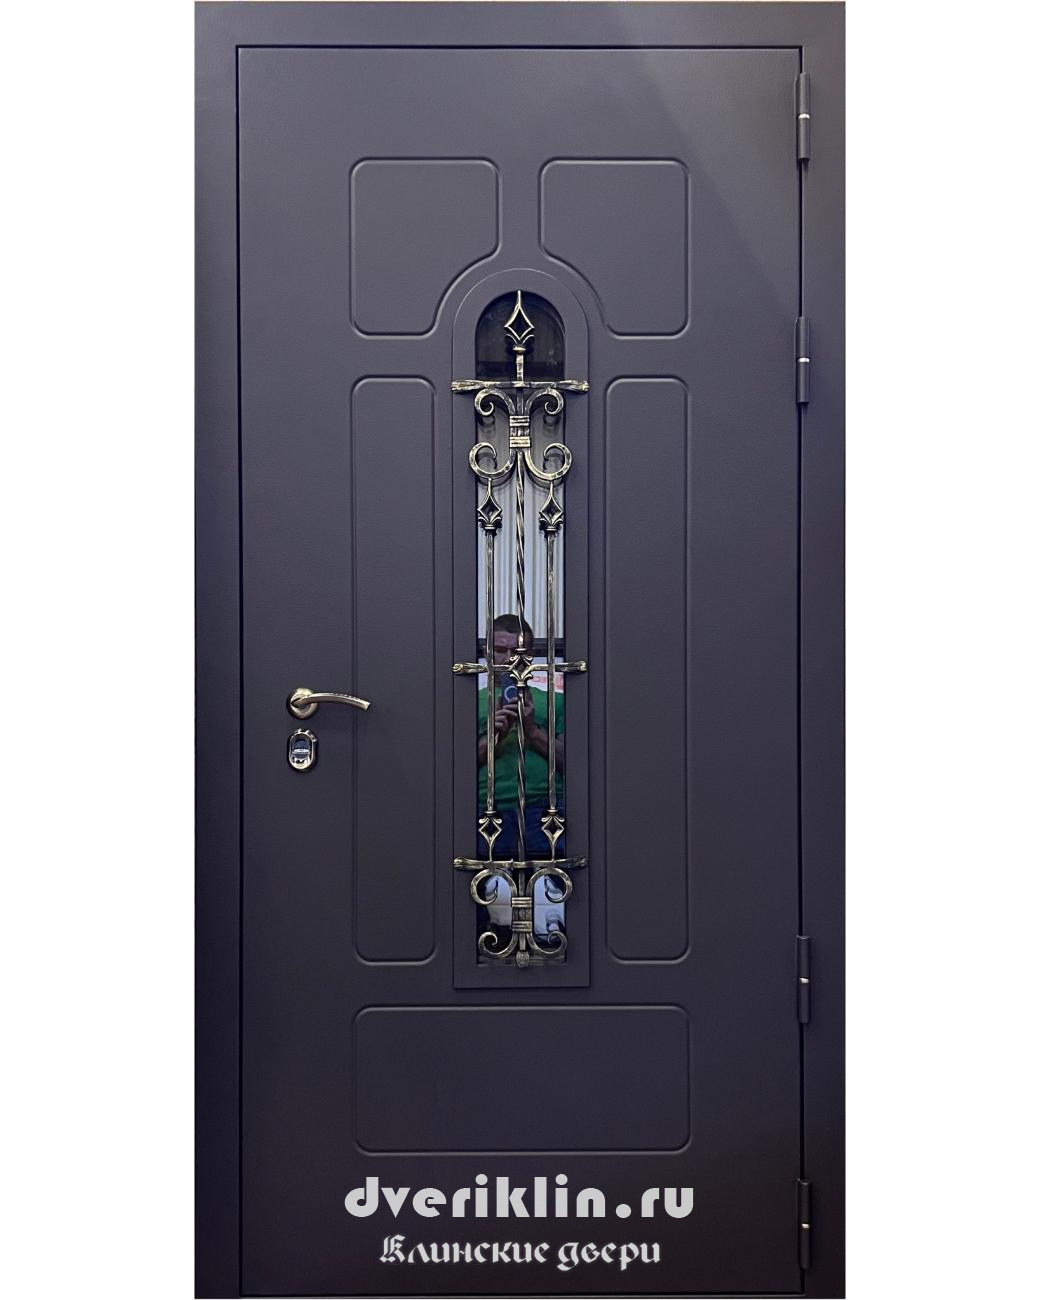 Дверь с рисунком на металле DPR-06 (С рисунком на металле)